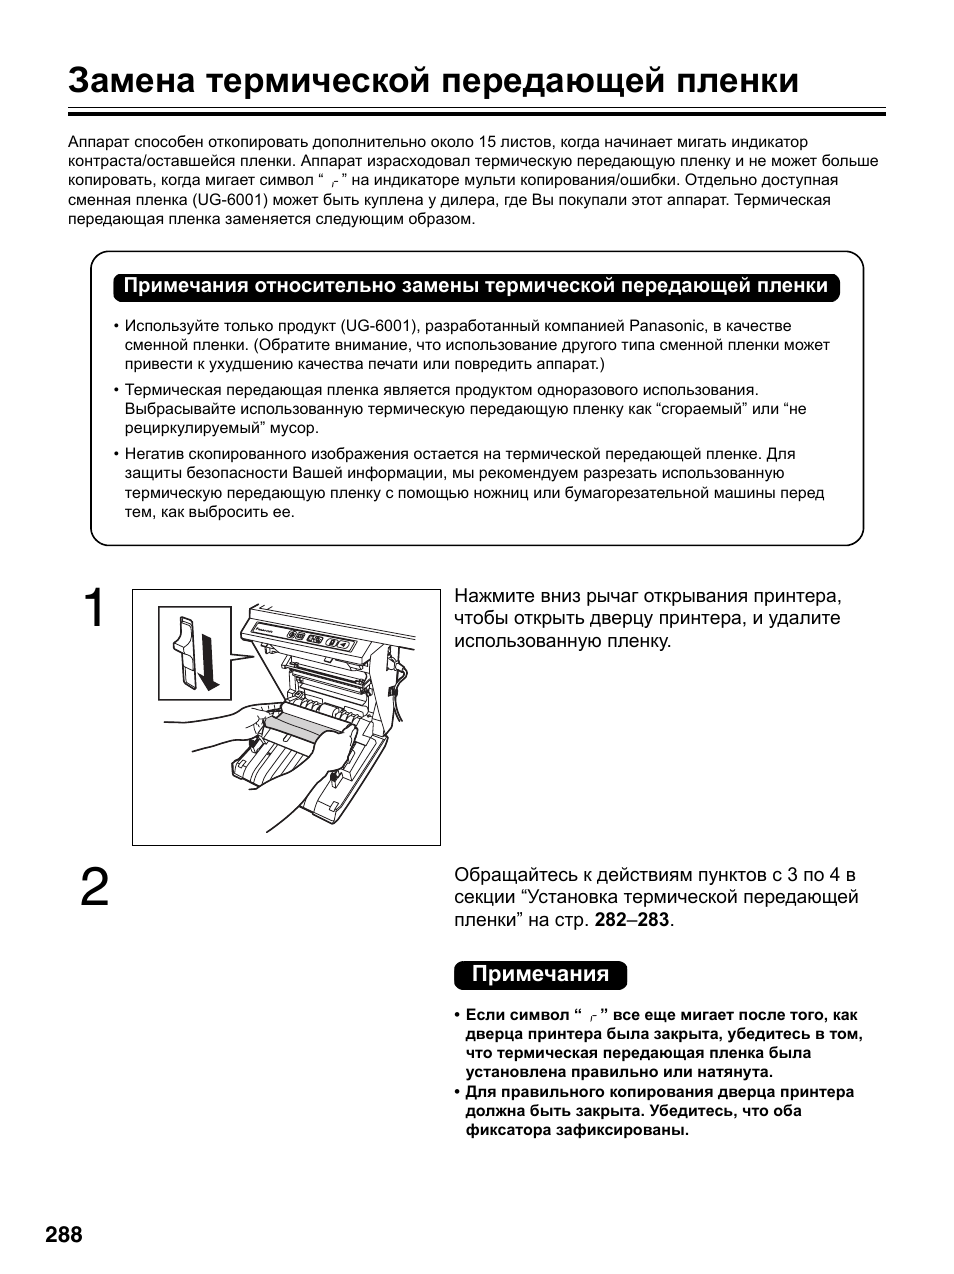 Замена термической передающей пленки | Инструкция по эксплуатации Panasonic UB-5315 | Страница 16 / 36